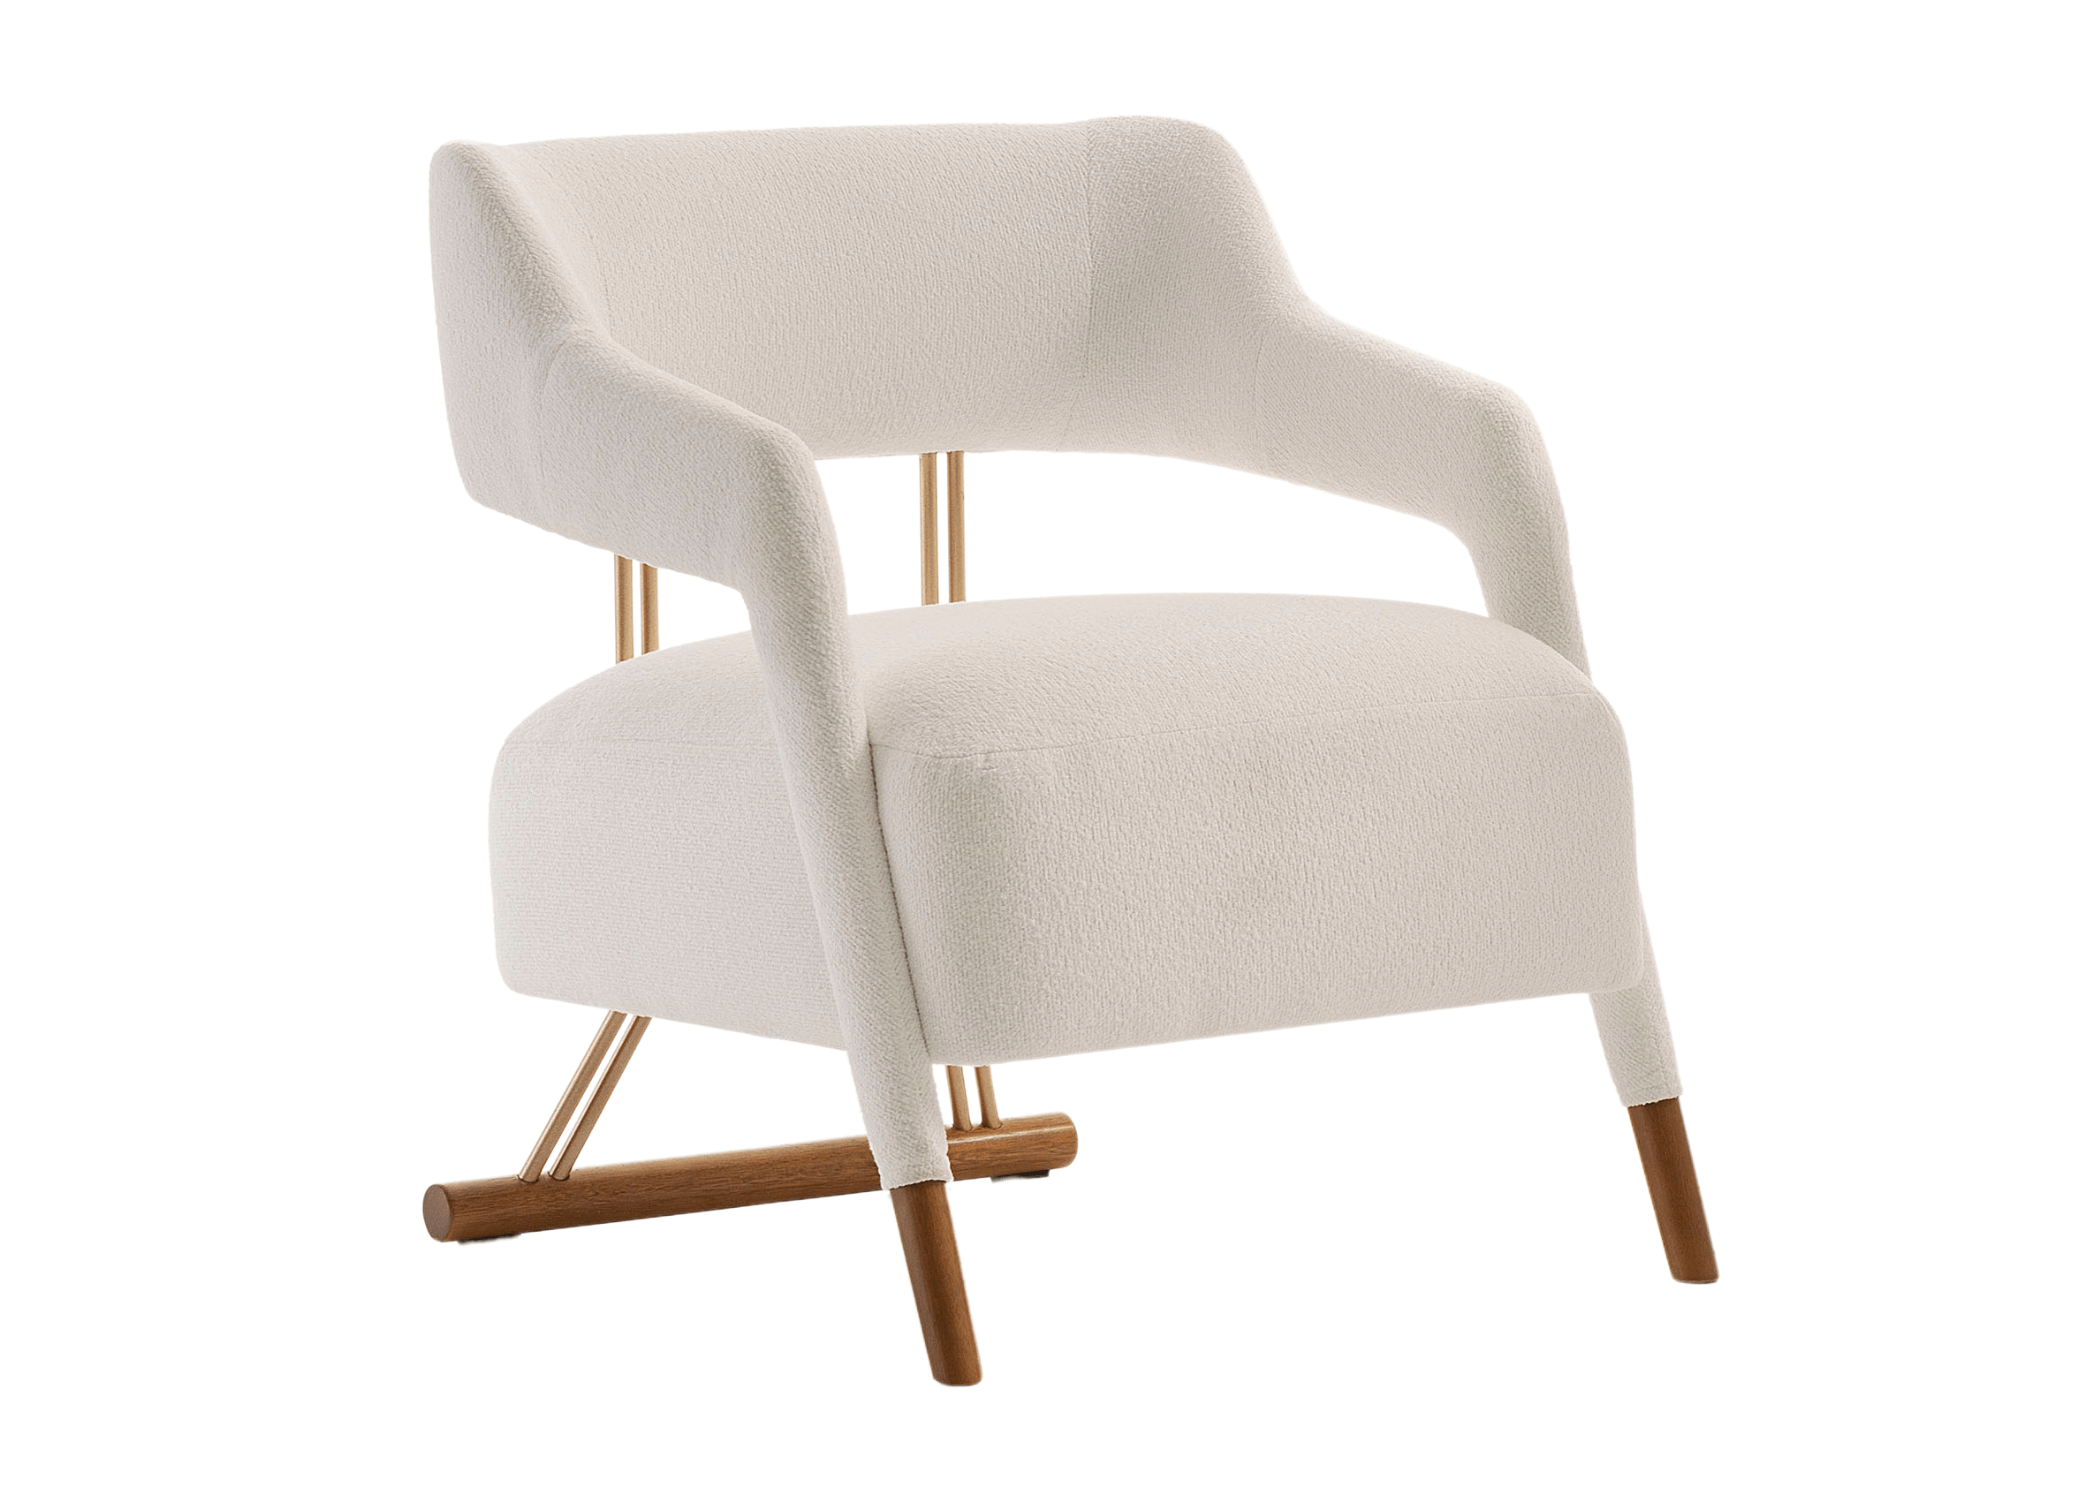 Poltrona Swing: Conforto e estilo em uma peça única de mobiliário.